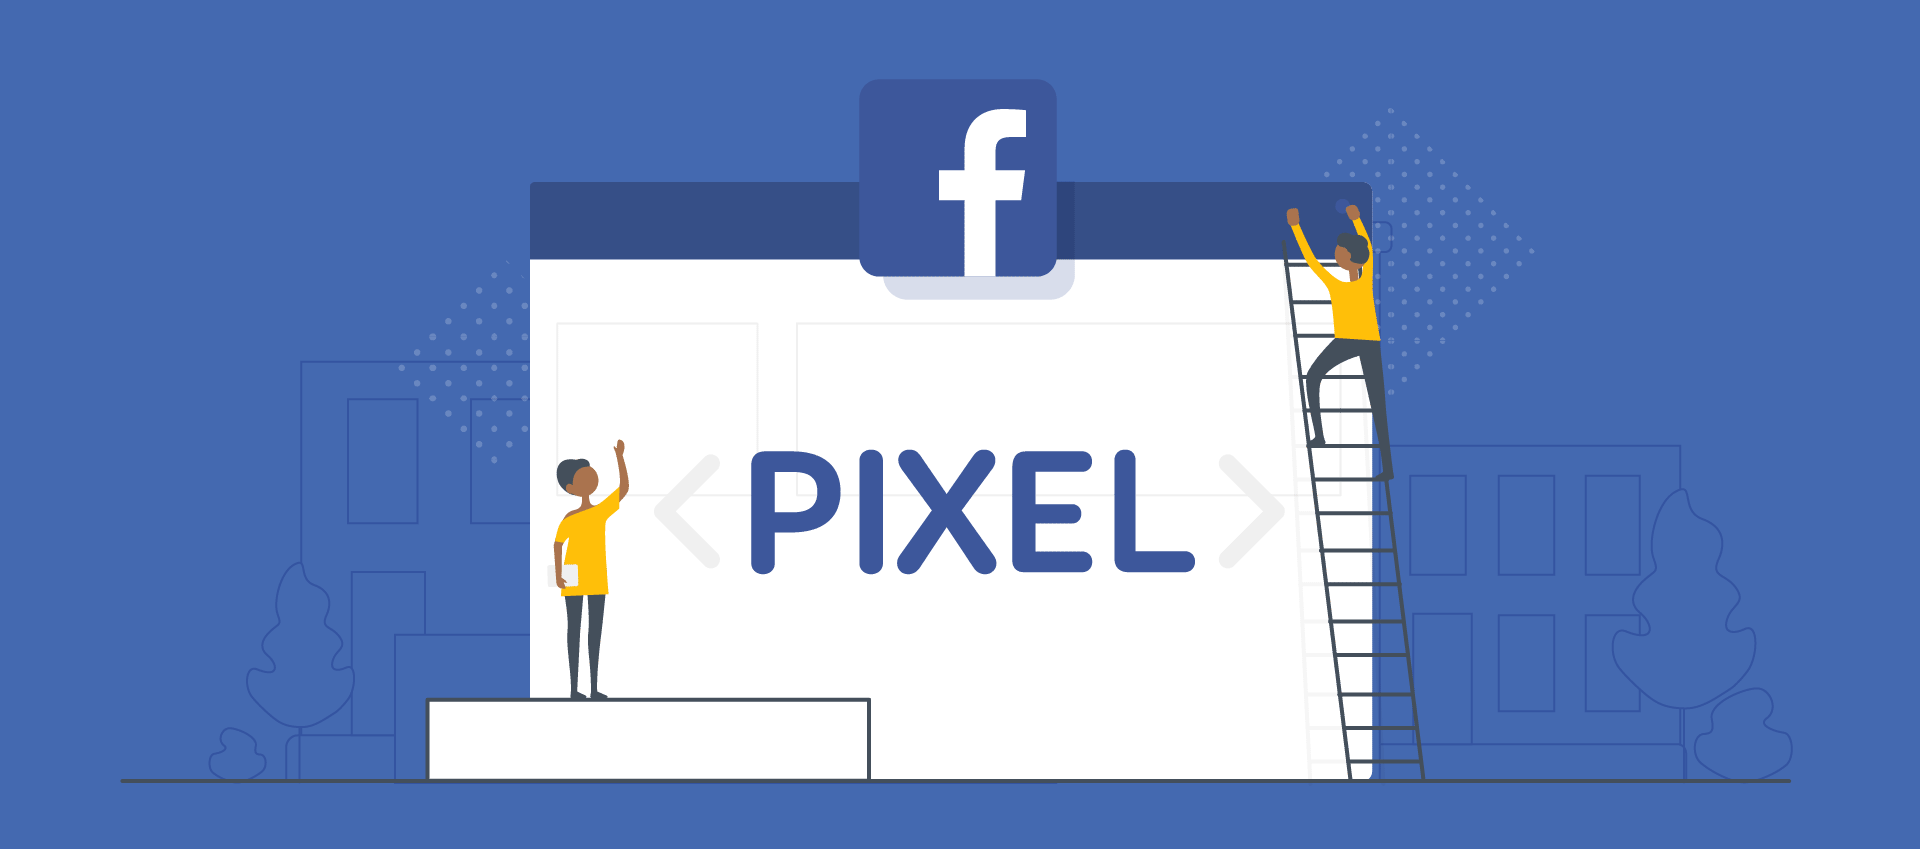 pixel de facebook